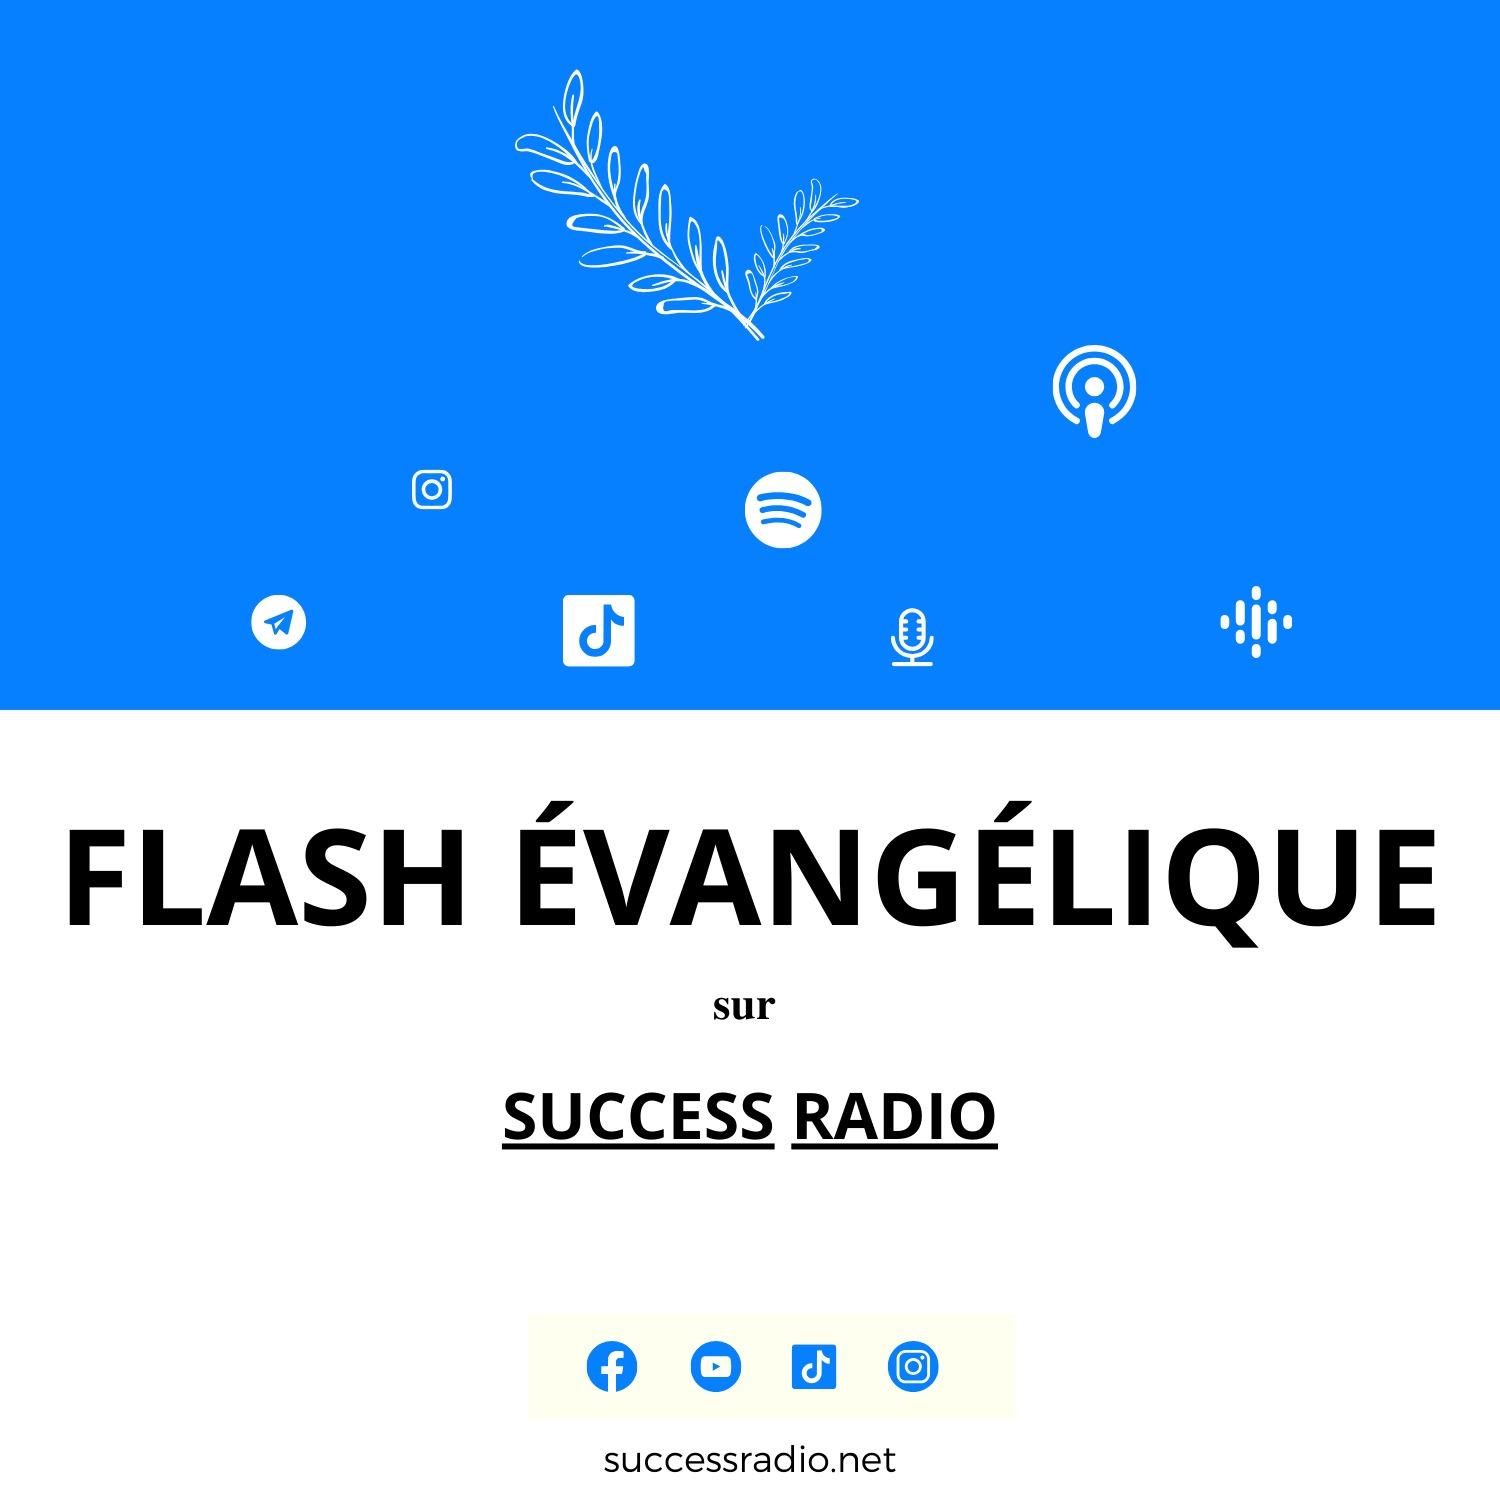 Flash Évangélique